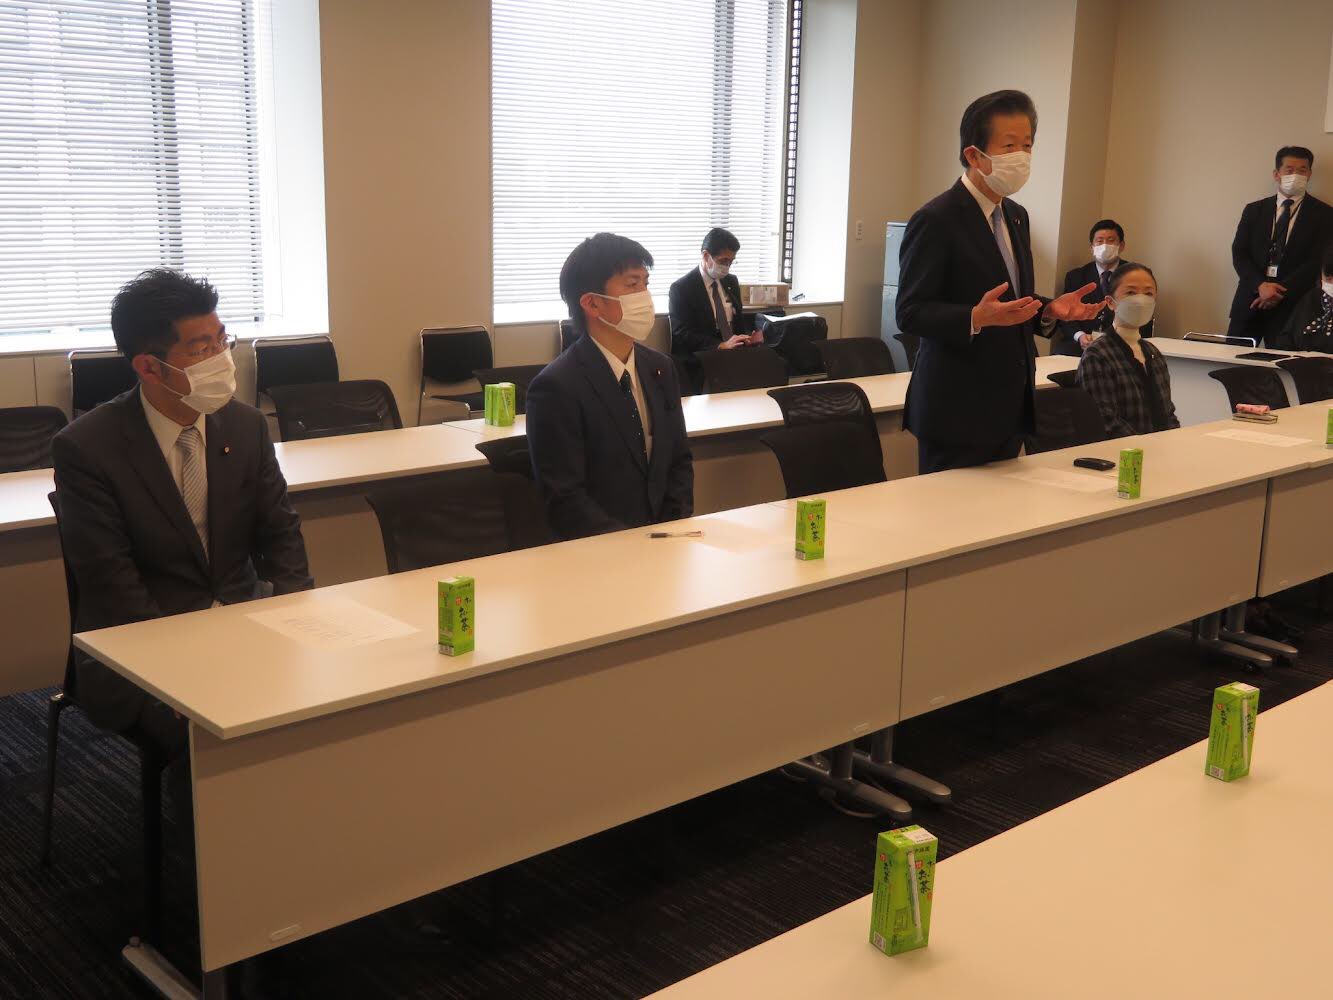 日本教職員組合(日教組)と教育環境向上に向けて意見交換